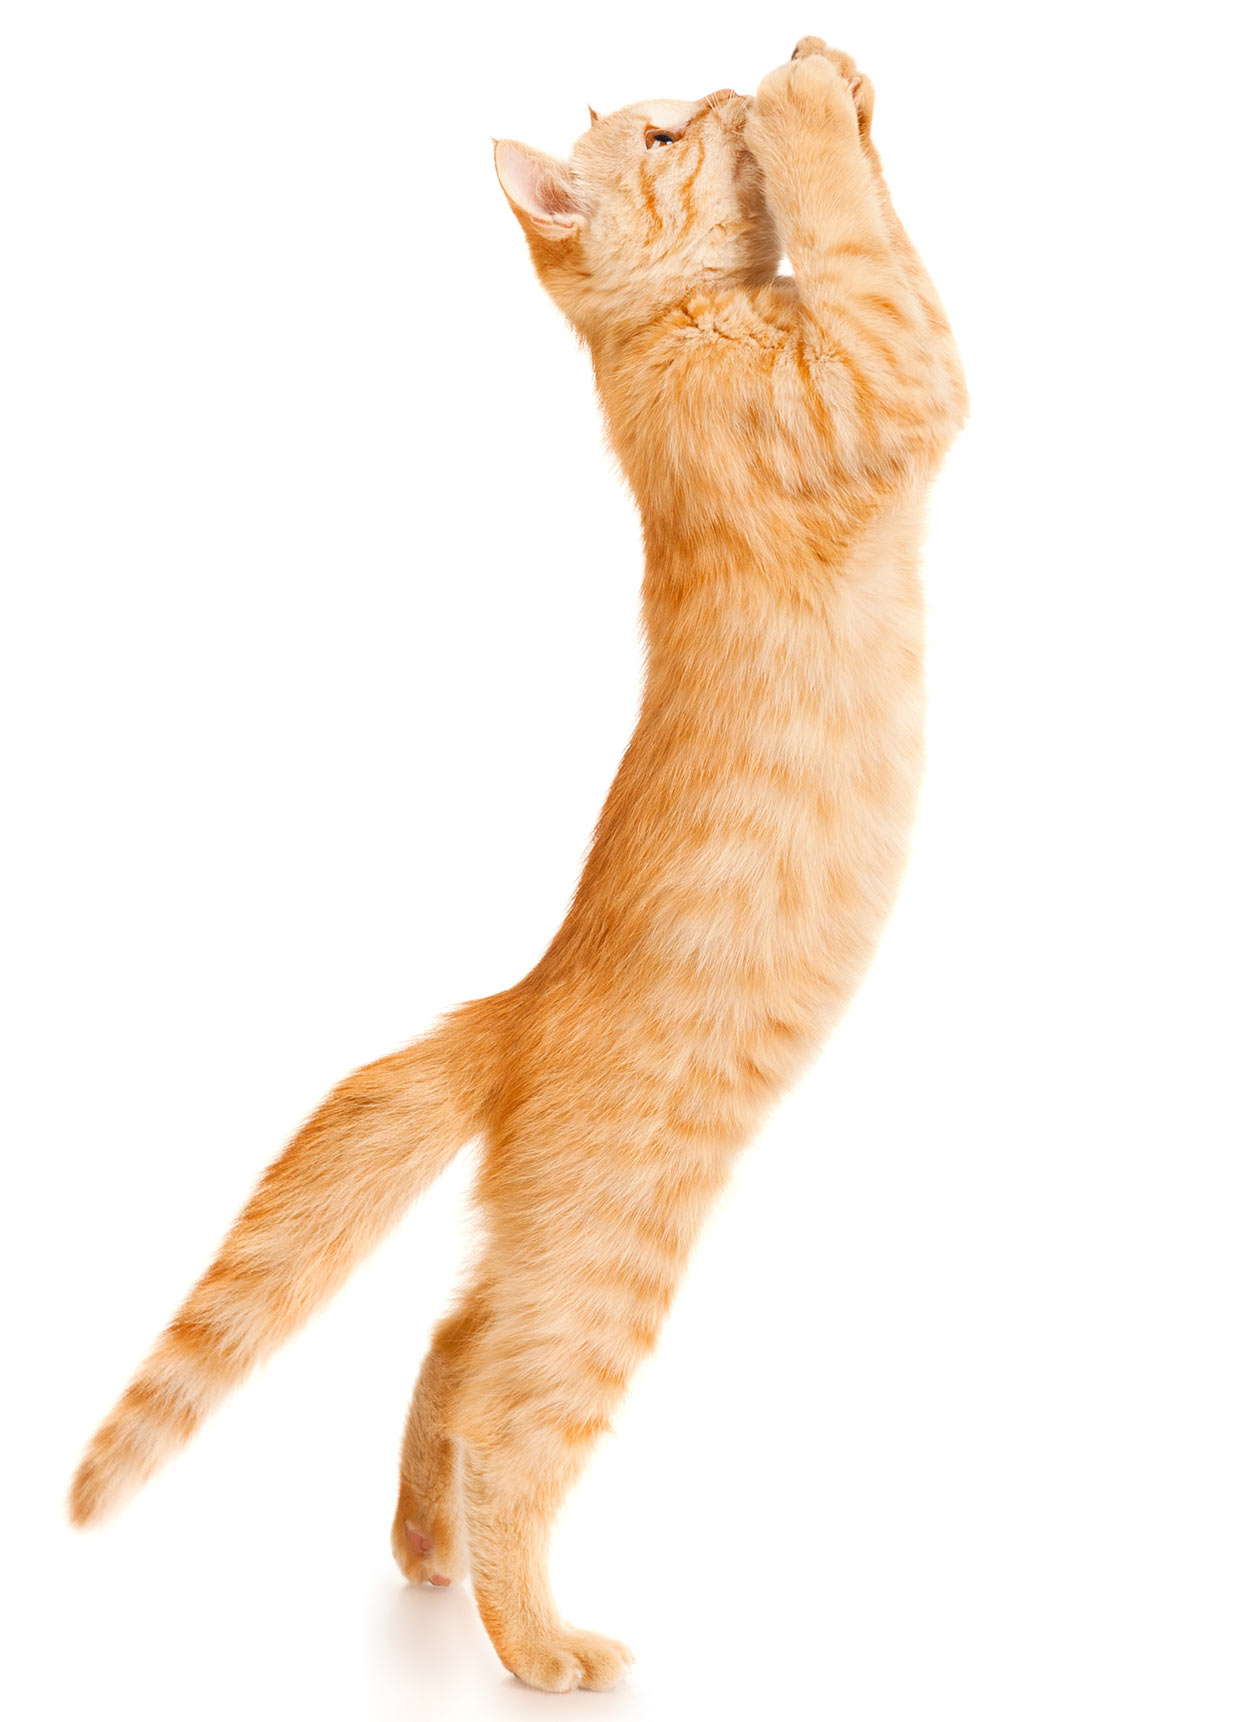 Рыжий кот в прыжке